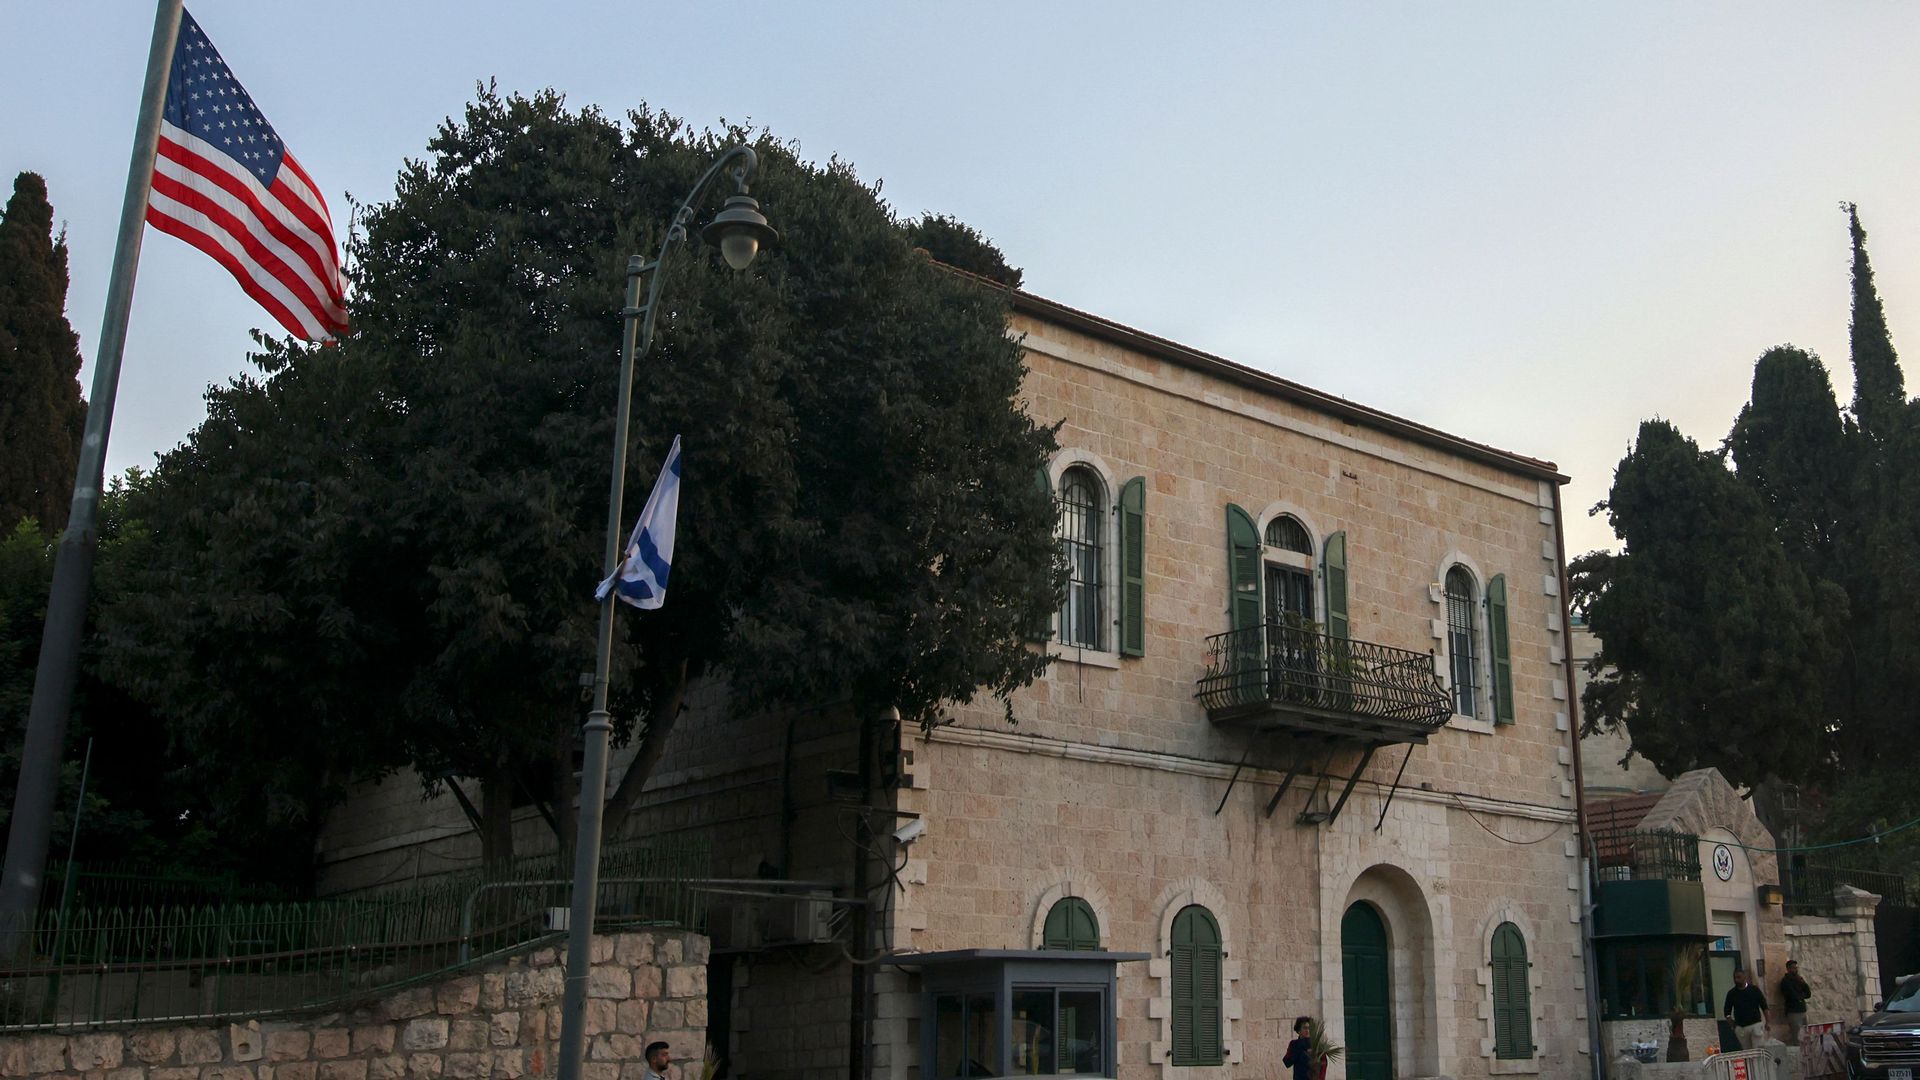  US consulate in Jerusalem